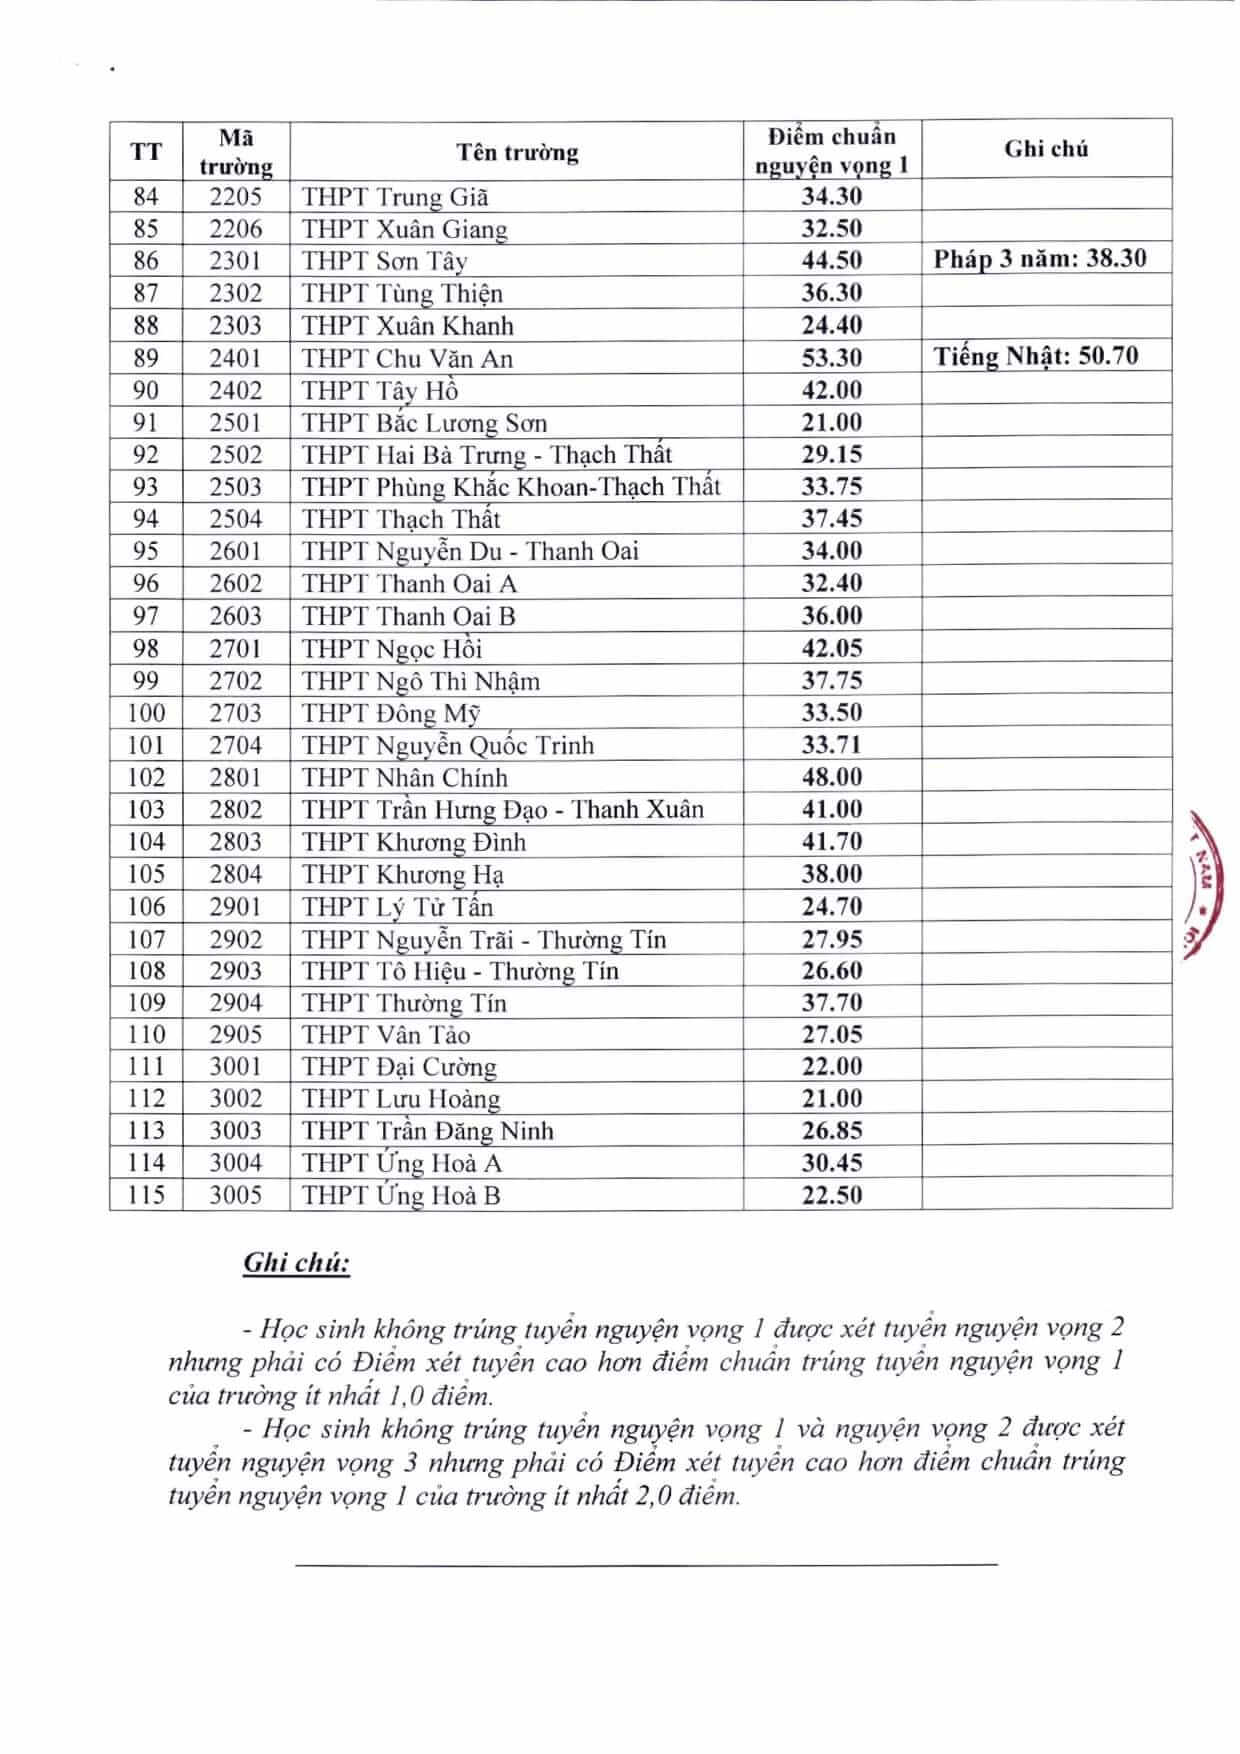 Điểm chuẩn vào lớp 10 2021 Hà Nội